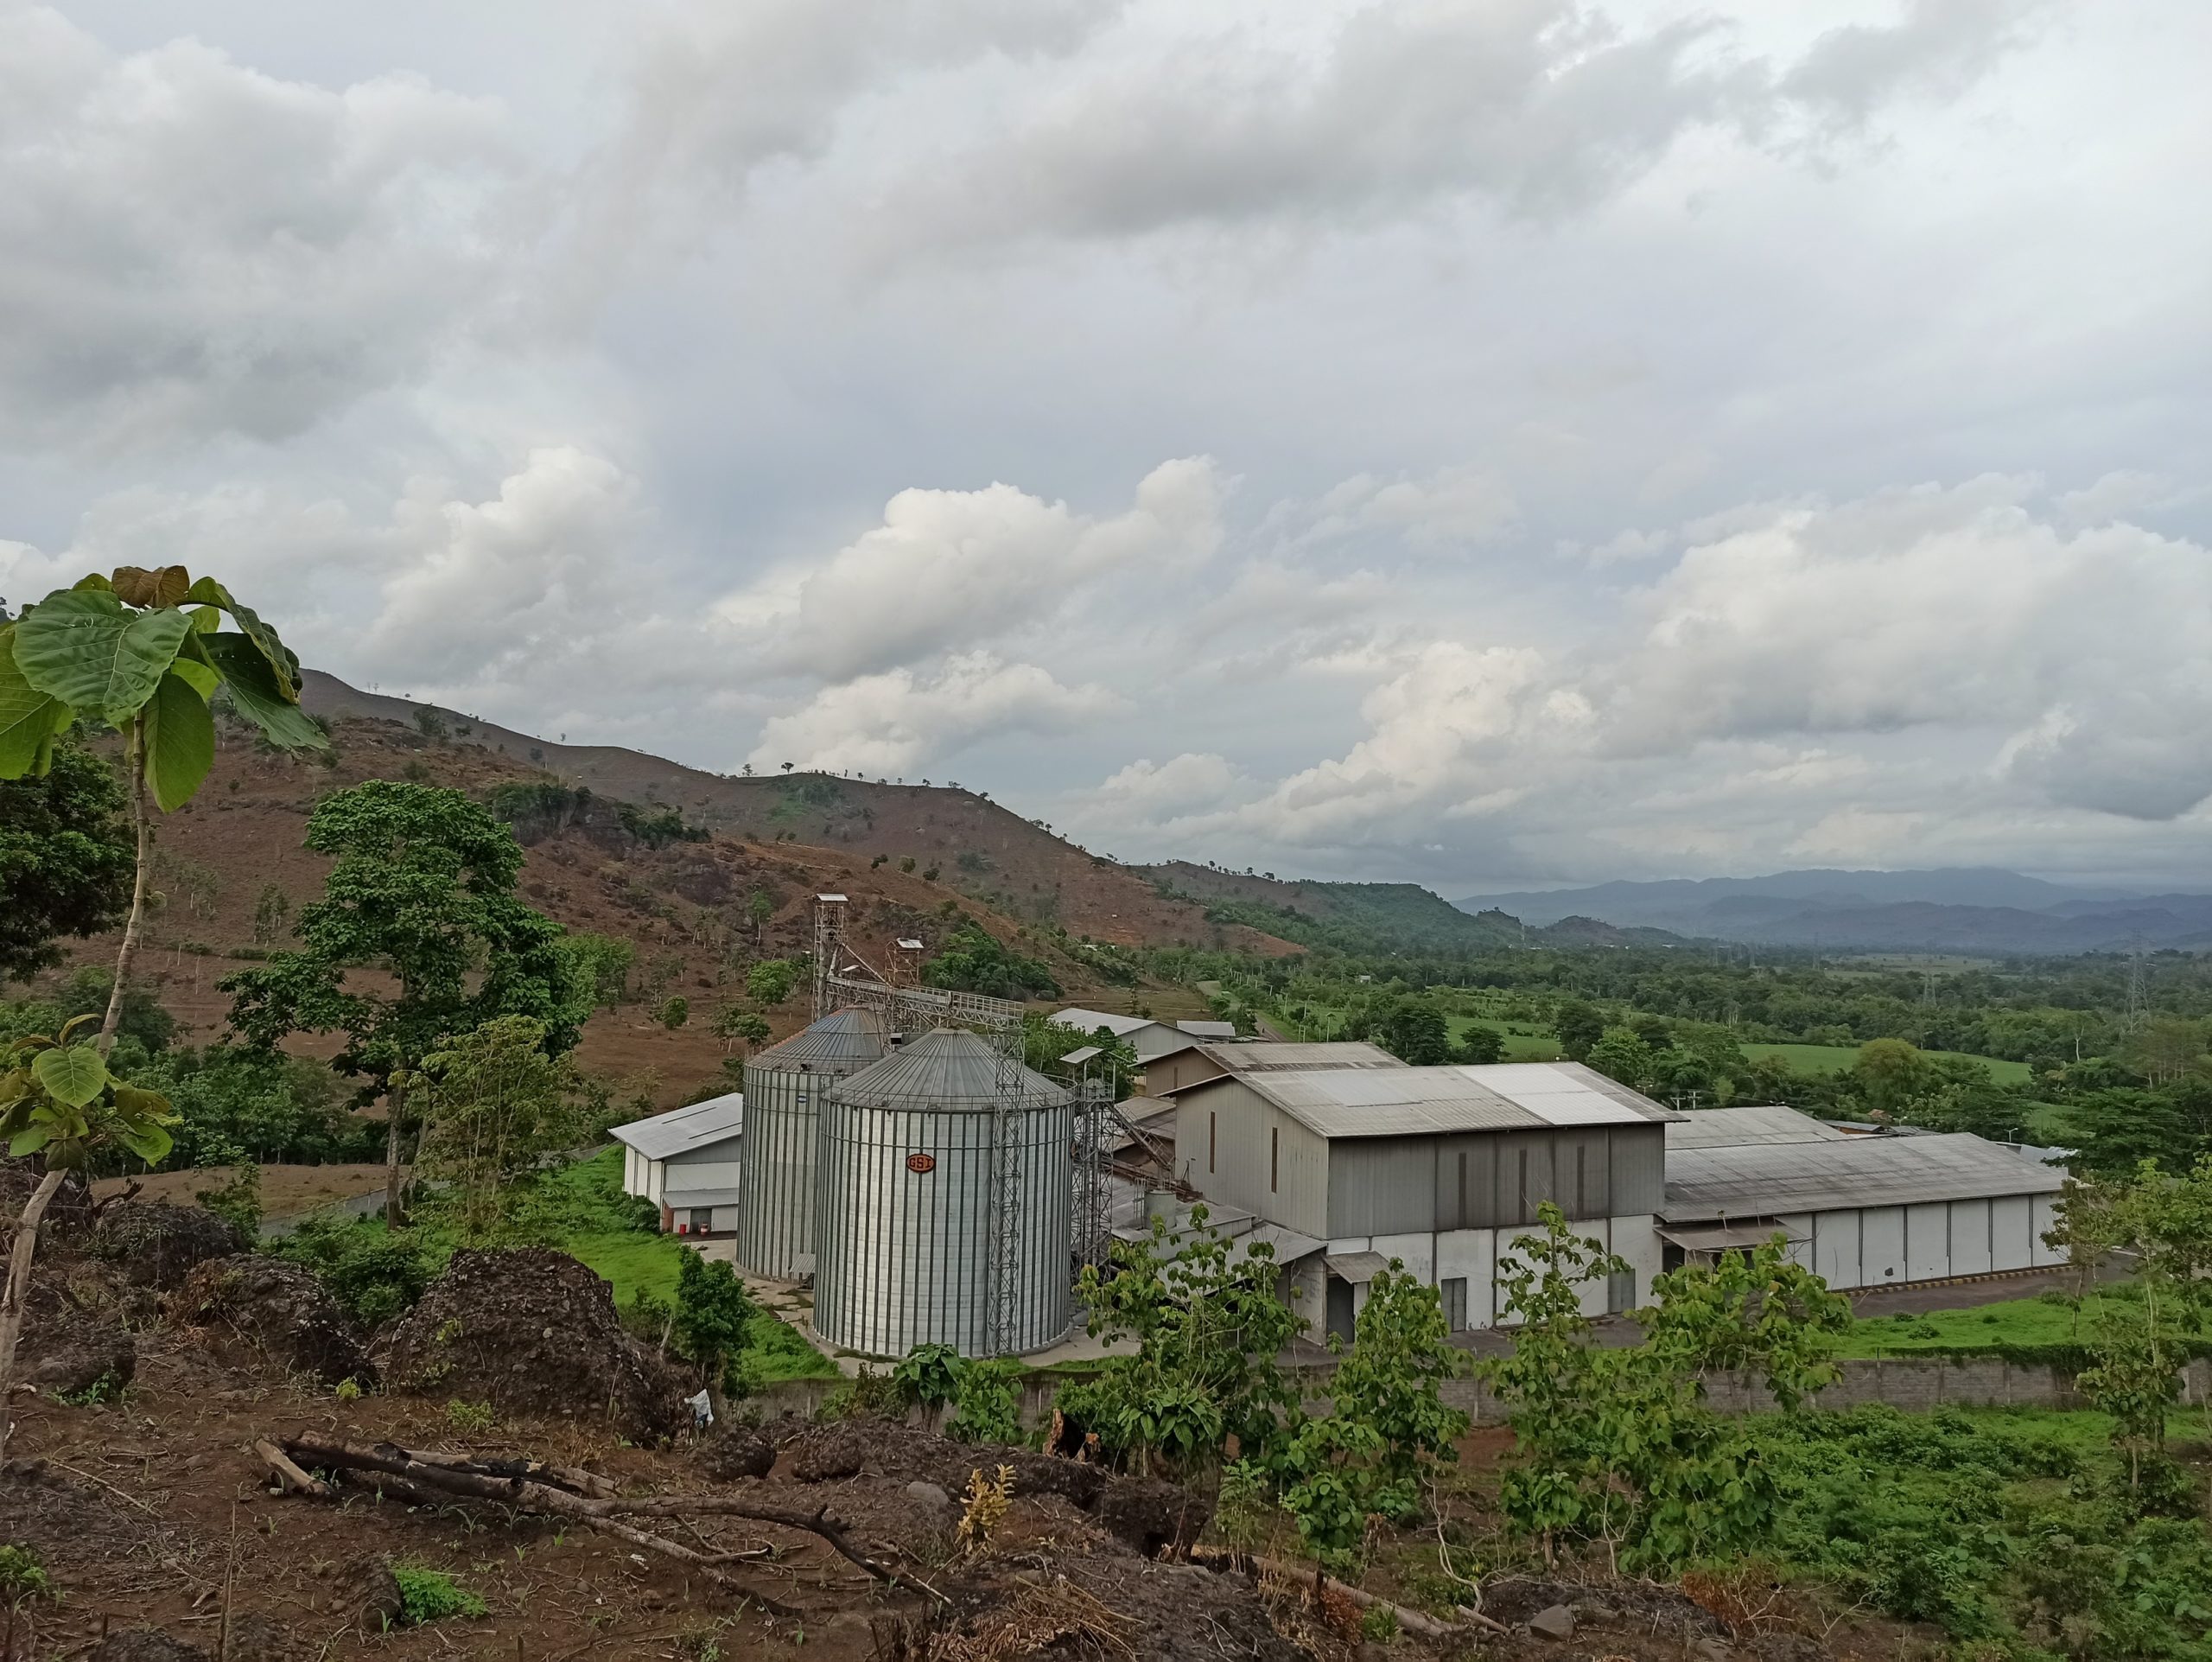 Keberadaan corn dryer (mesin pengering jagung) hingga ke desa-desa memudahkan petani, tapi di sisi lain juga tidak ada kontrol jagung yang diterima bukan dari dalam kawasan hutan. Foto: Fathul Rakhman/Mongabay Indonesia